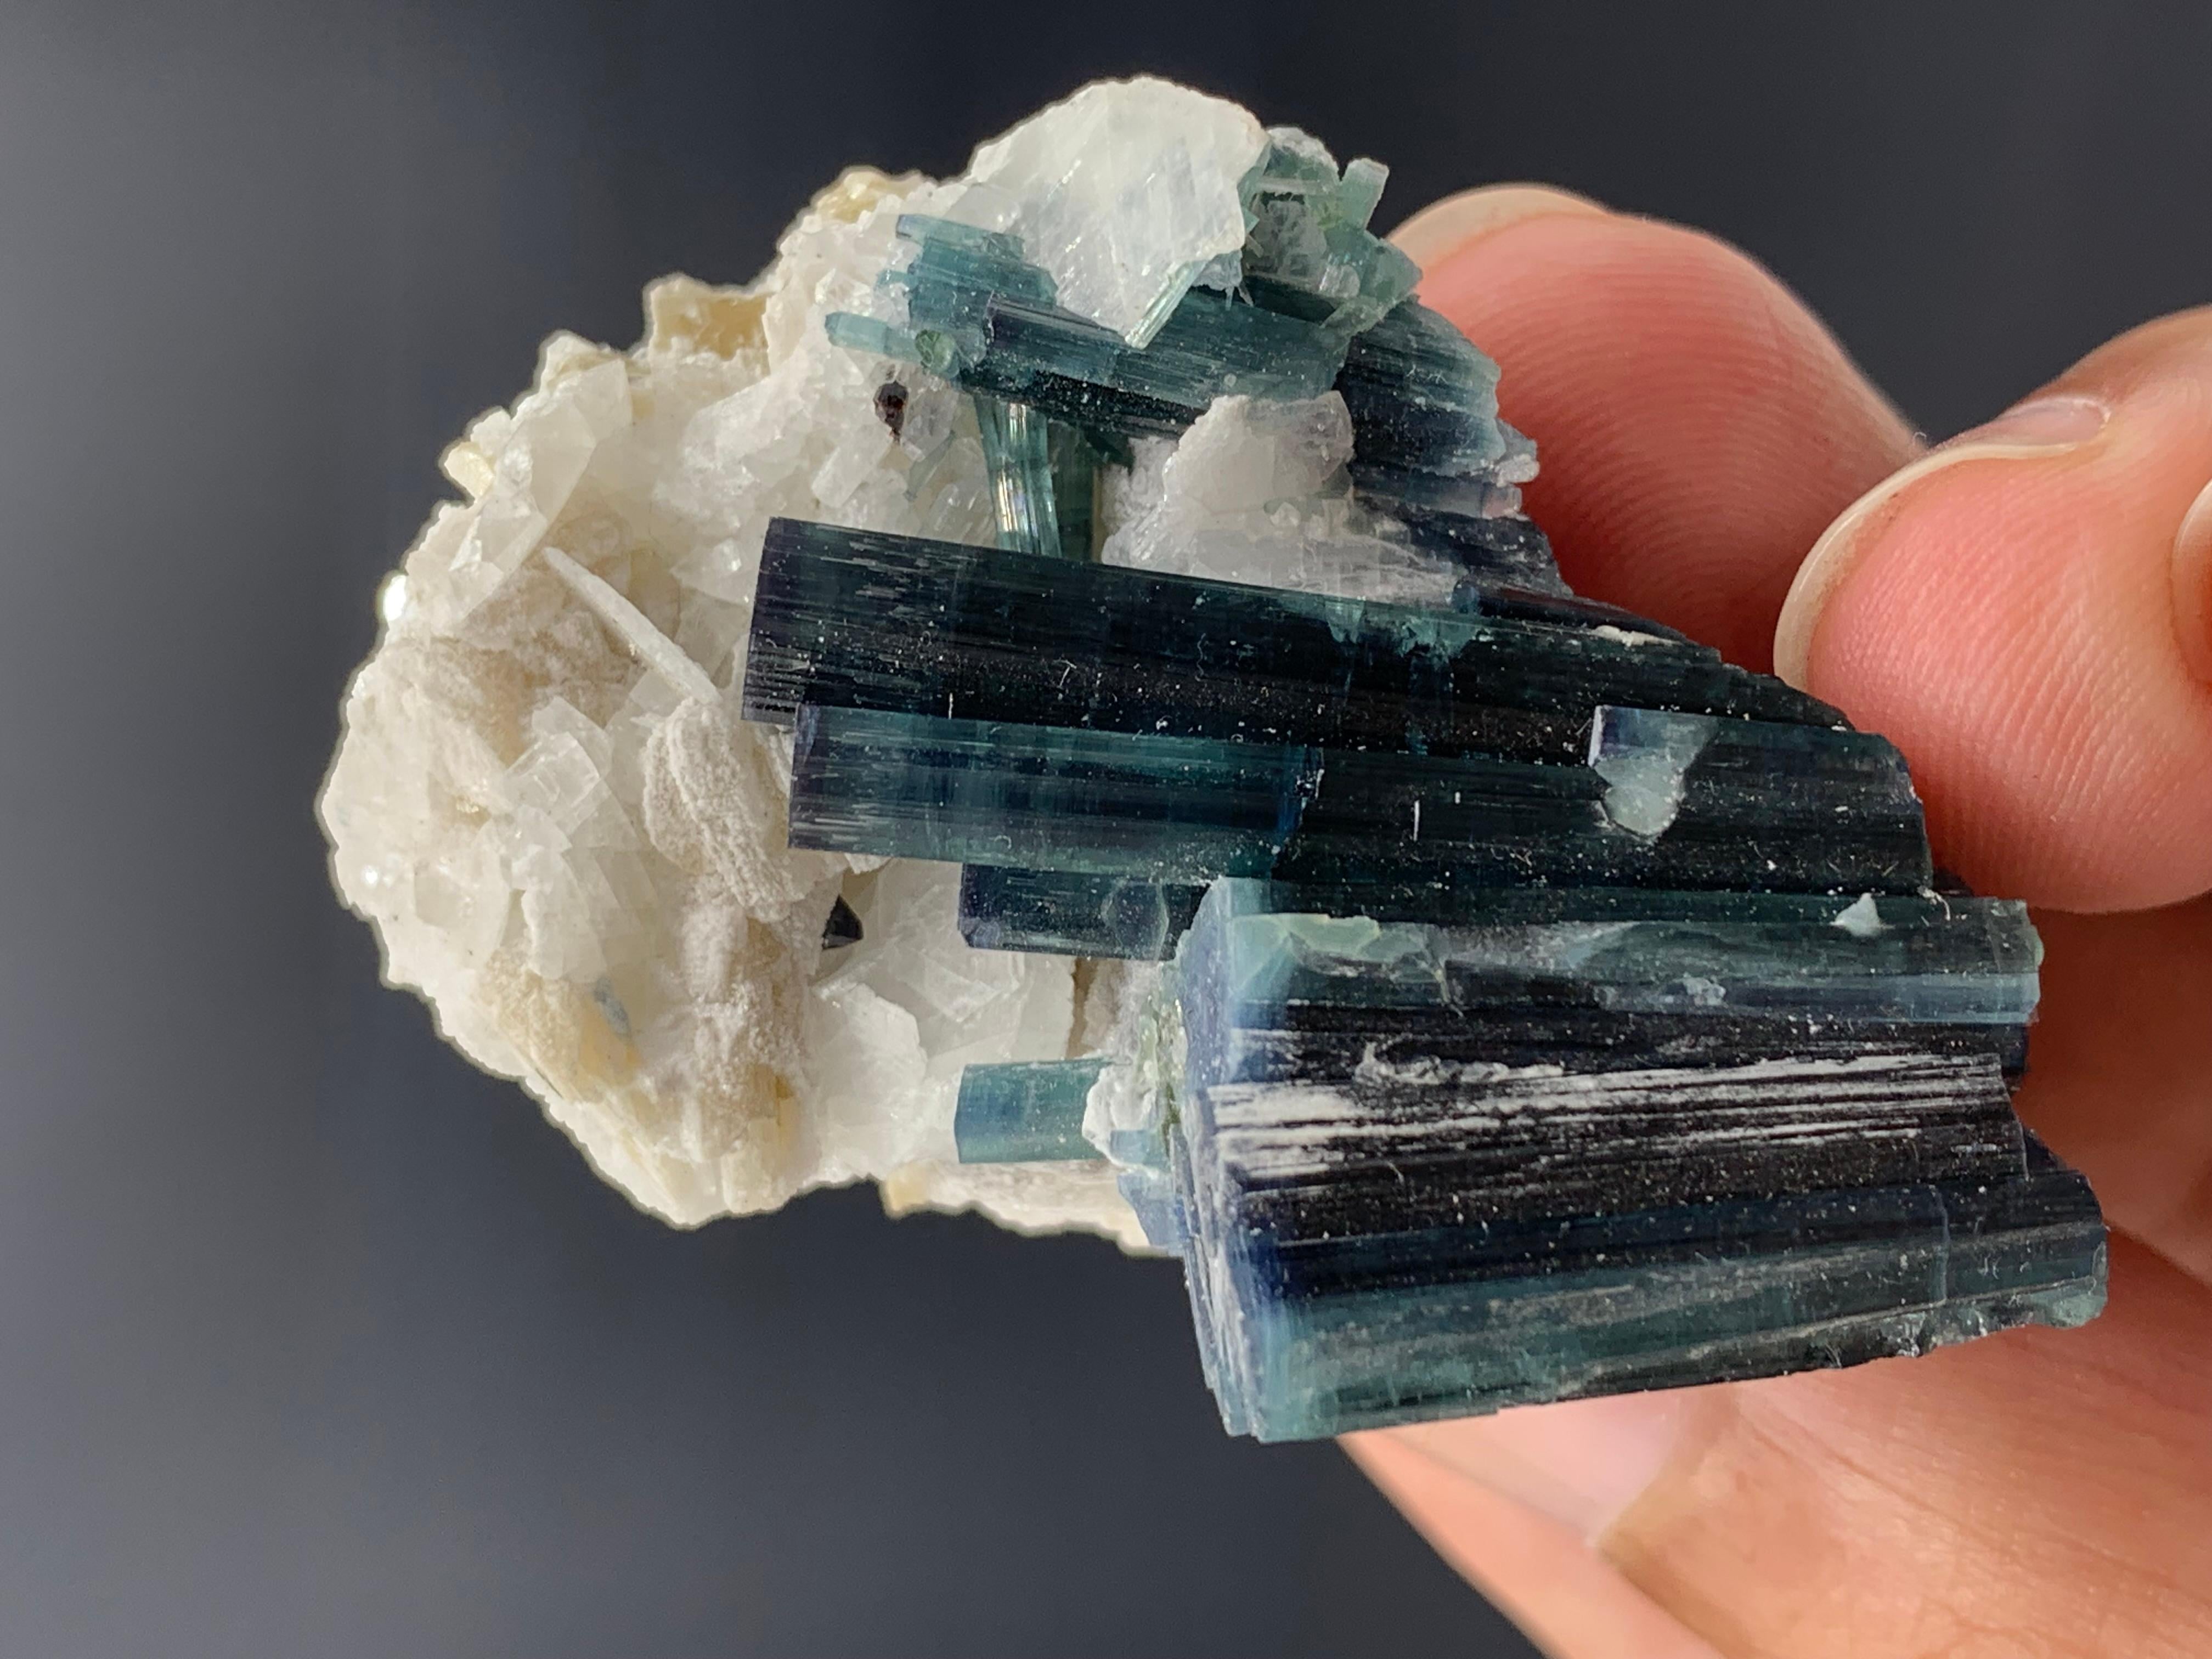 35,45 Superbe spécimen de tourmaline bleue indicolite provenant de Kunar, Afghanistan 
Poids : 35,45 grammes
Dimensions : 4,6 x 3,6 x 2,8 cm 
Origine : Kunar, Afghanistan 

La tourmaline est un groupe minéral de silicate cristallin dans lequel le